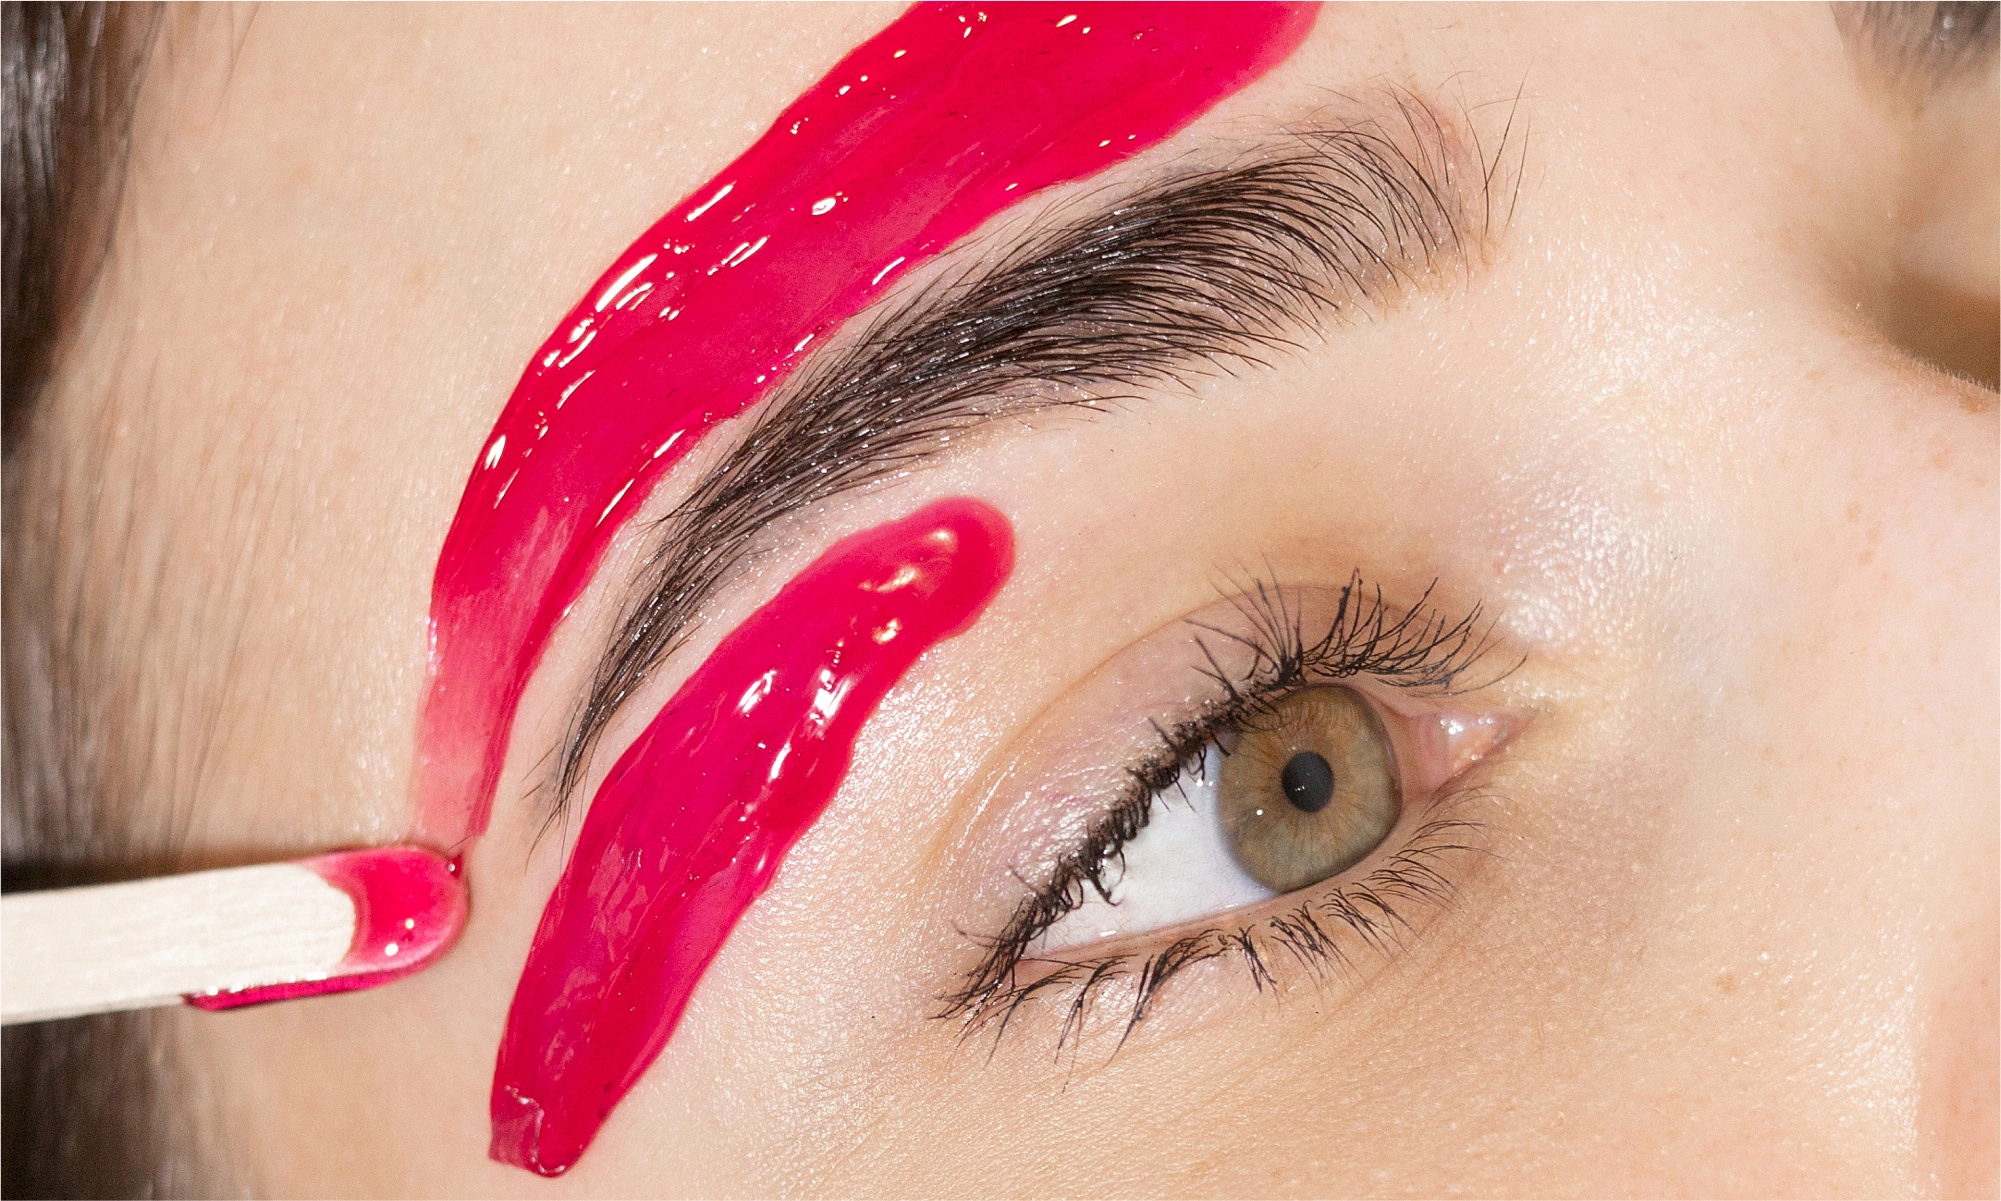 Benefits of eyebrow waxing